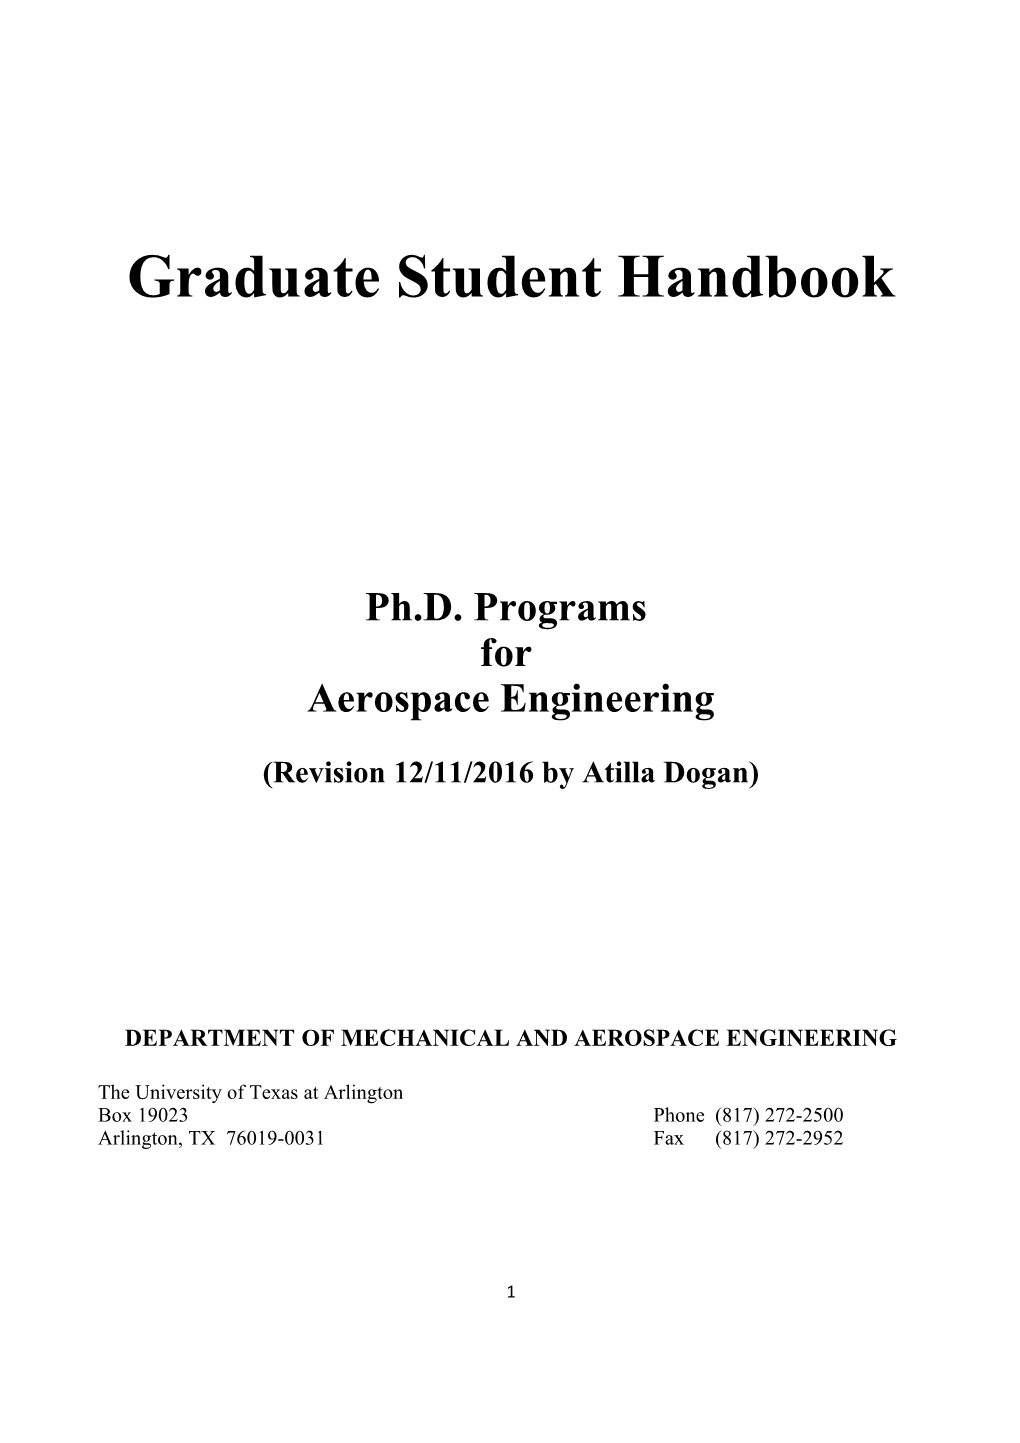 AE Phd Graduate Handbook Rev Aug11